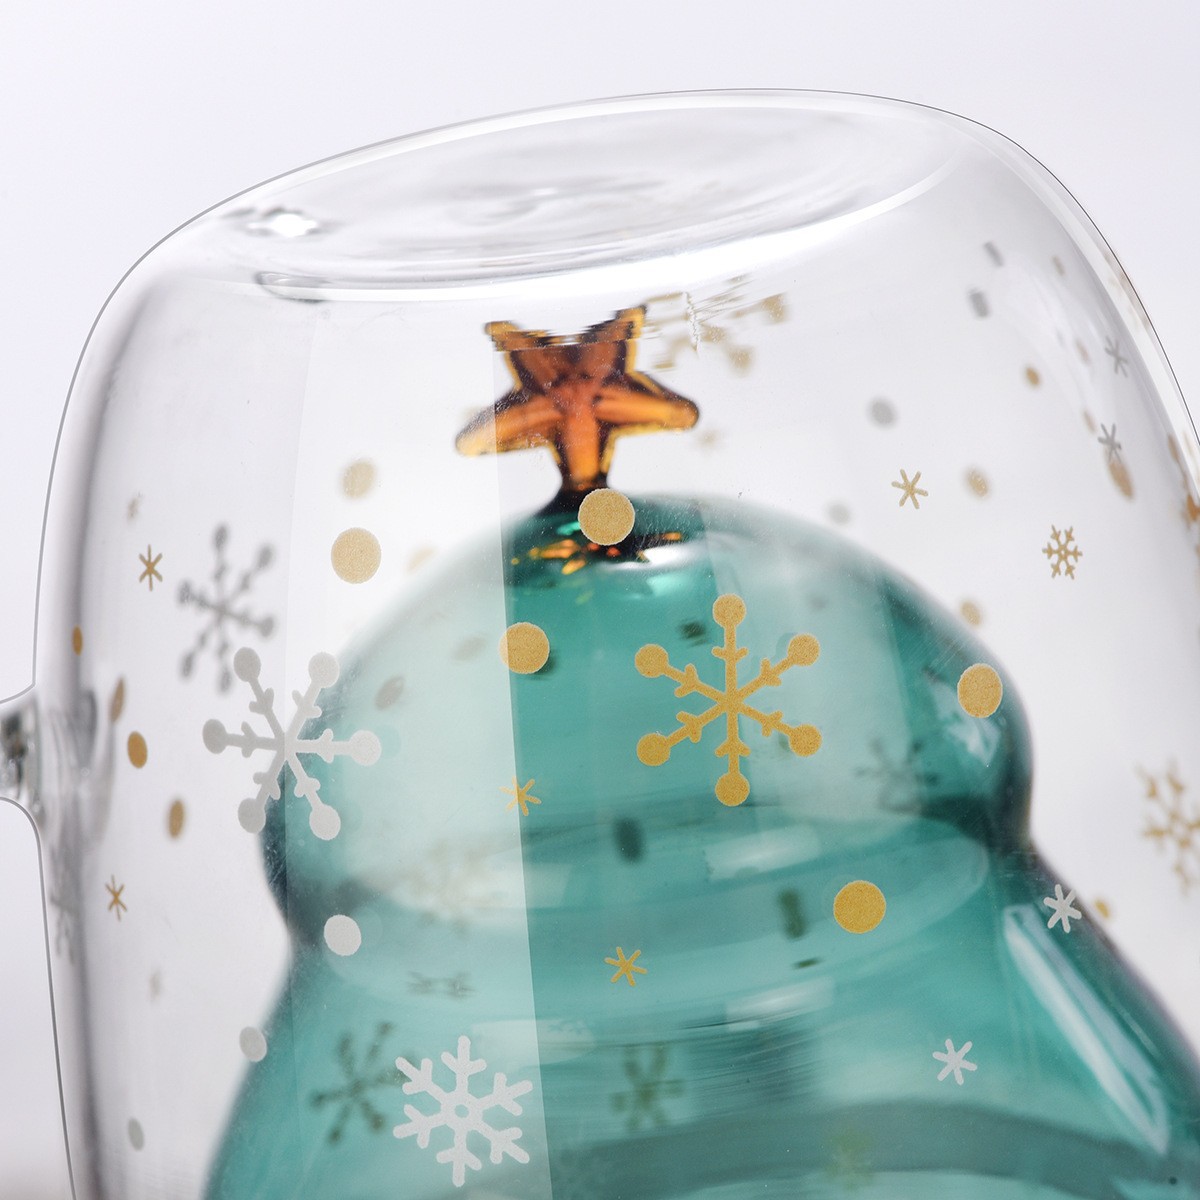 創意小物館 浪漫心願聖誕樹帶蓋雙層玻璃杯